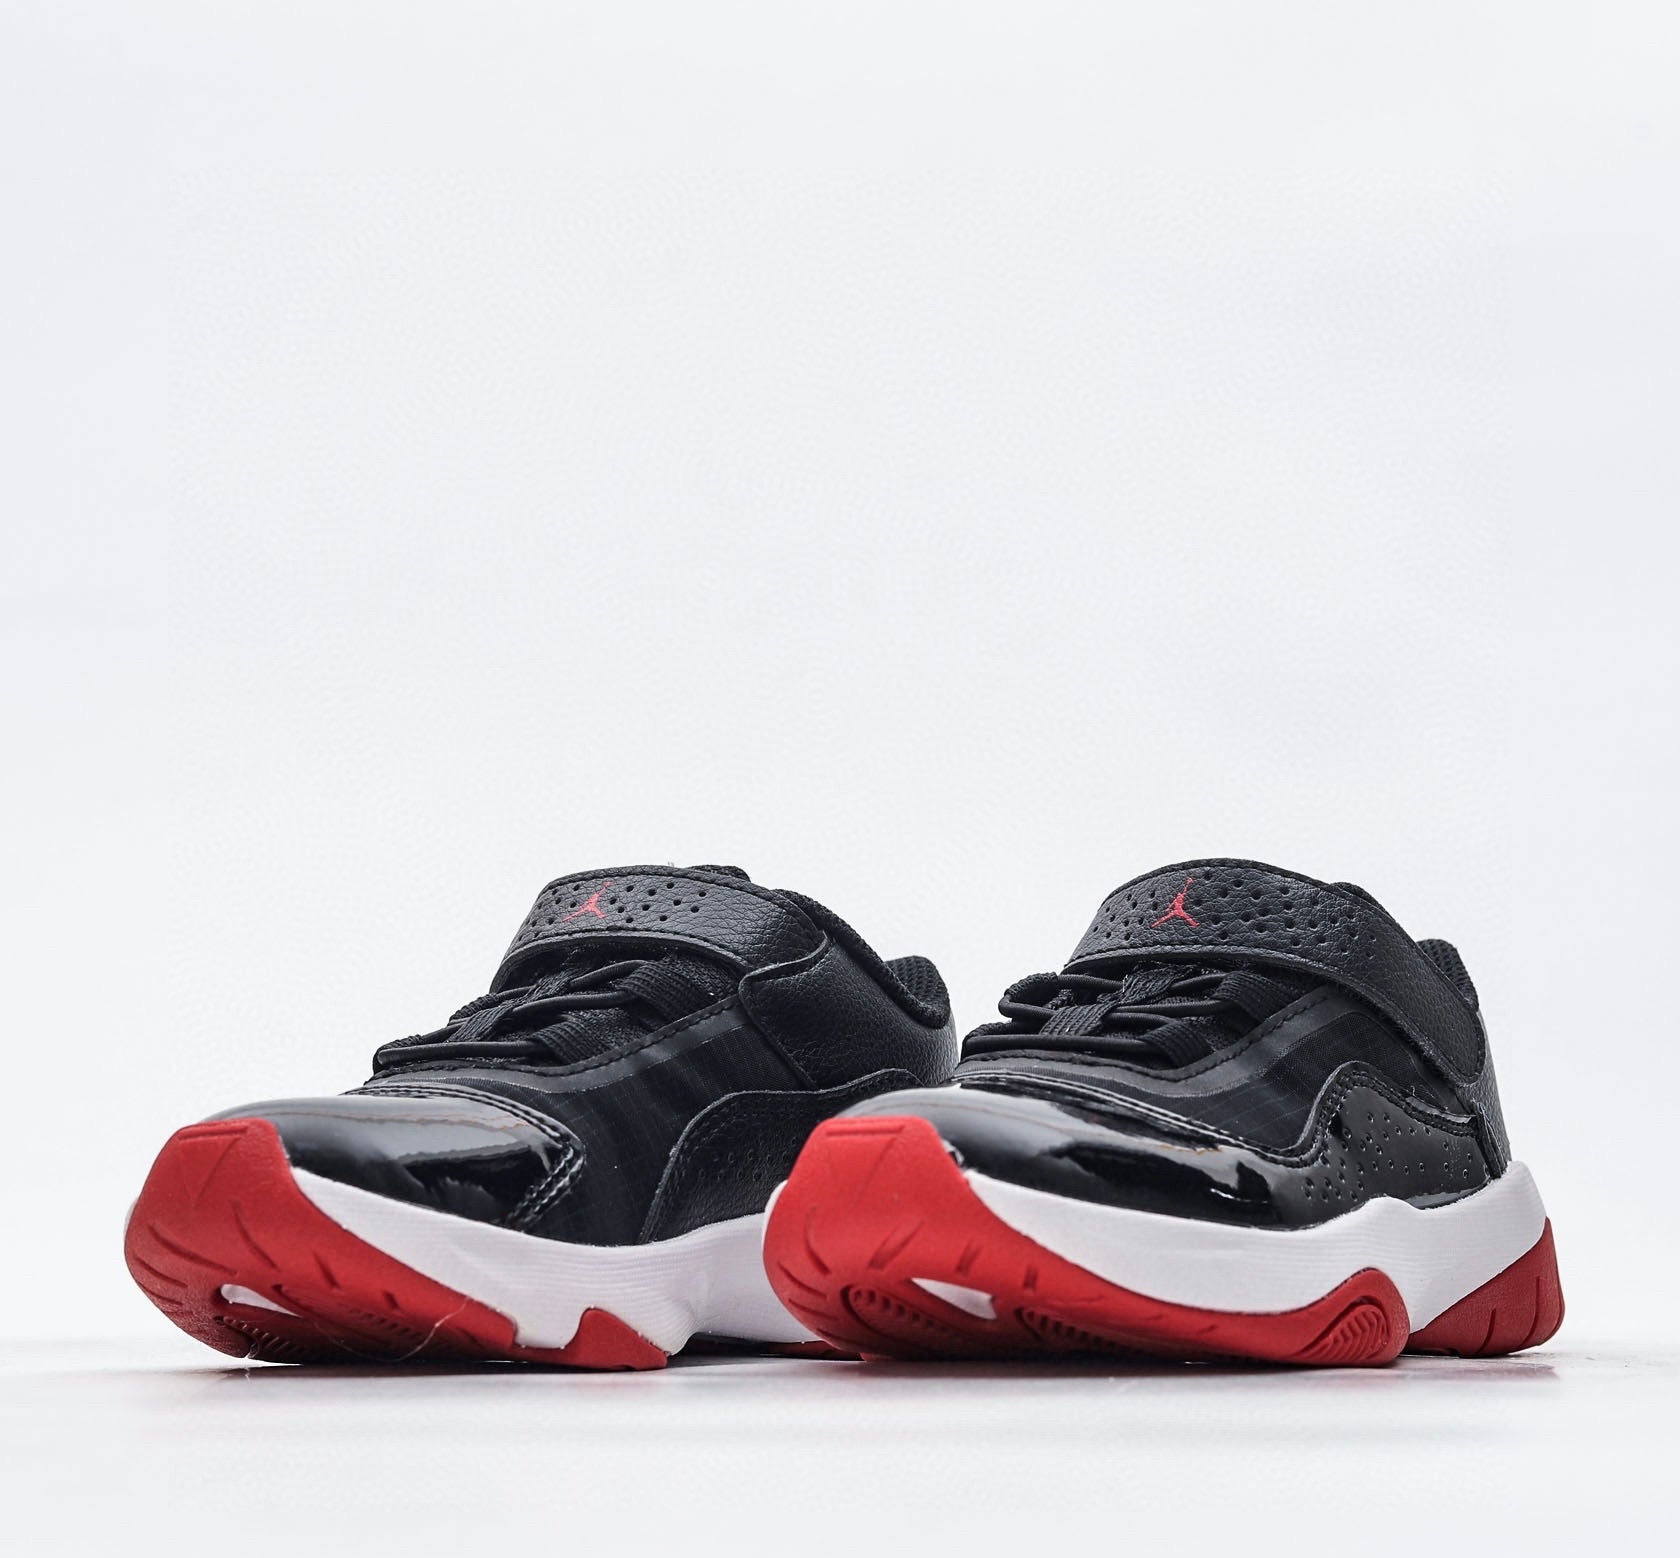 Nike air jordan retro low cut chaussures noires et rouges